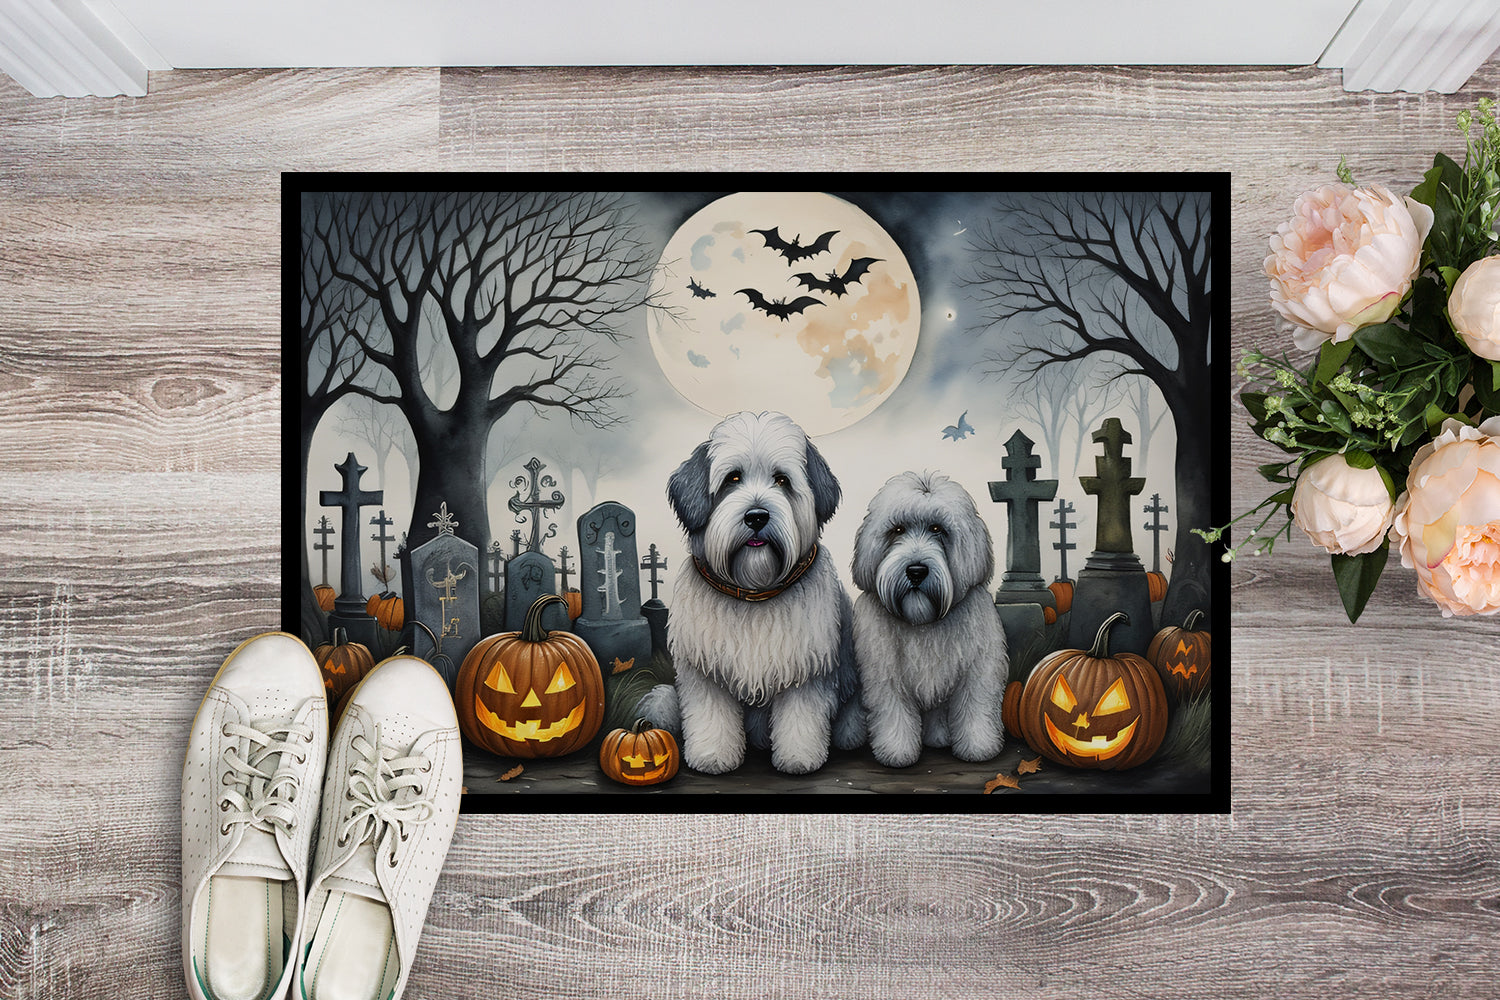 Old English Sheepdog Spooky Halloween Doormat 18x27